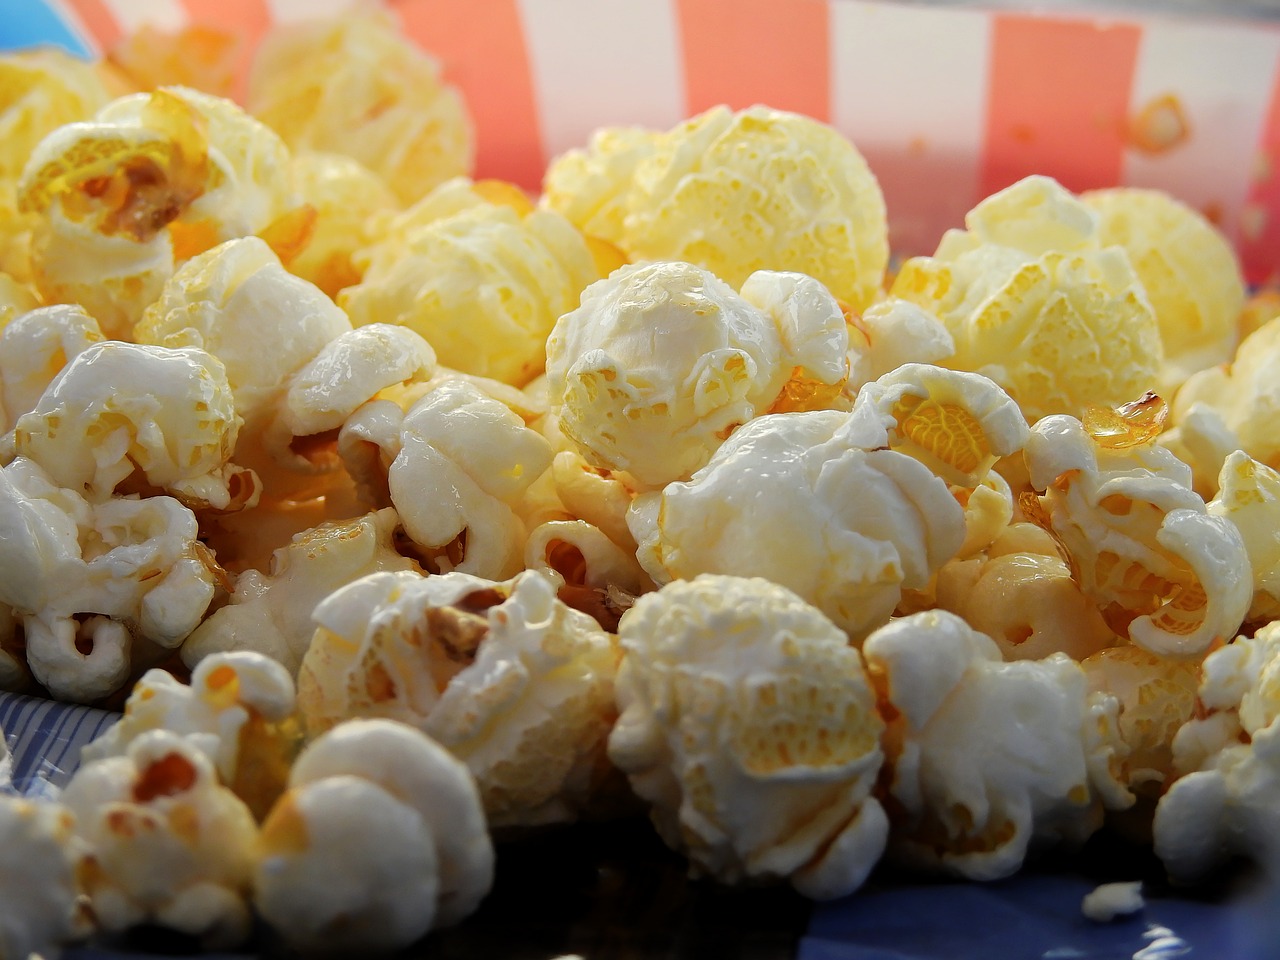 Czy popcorn w każdym kraju smakuje tak samo?